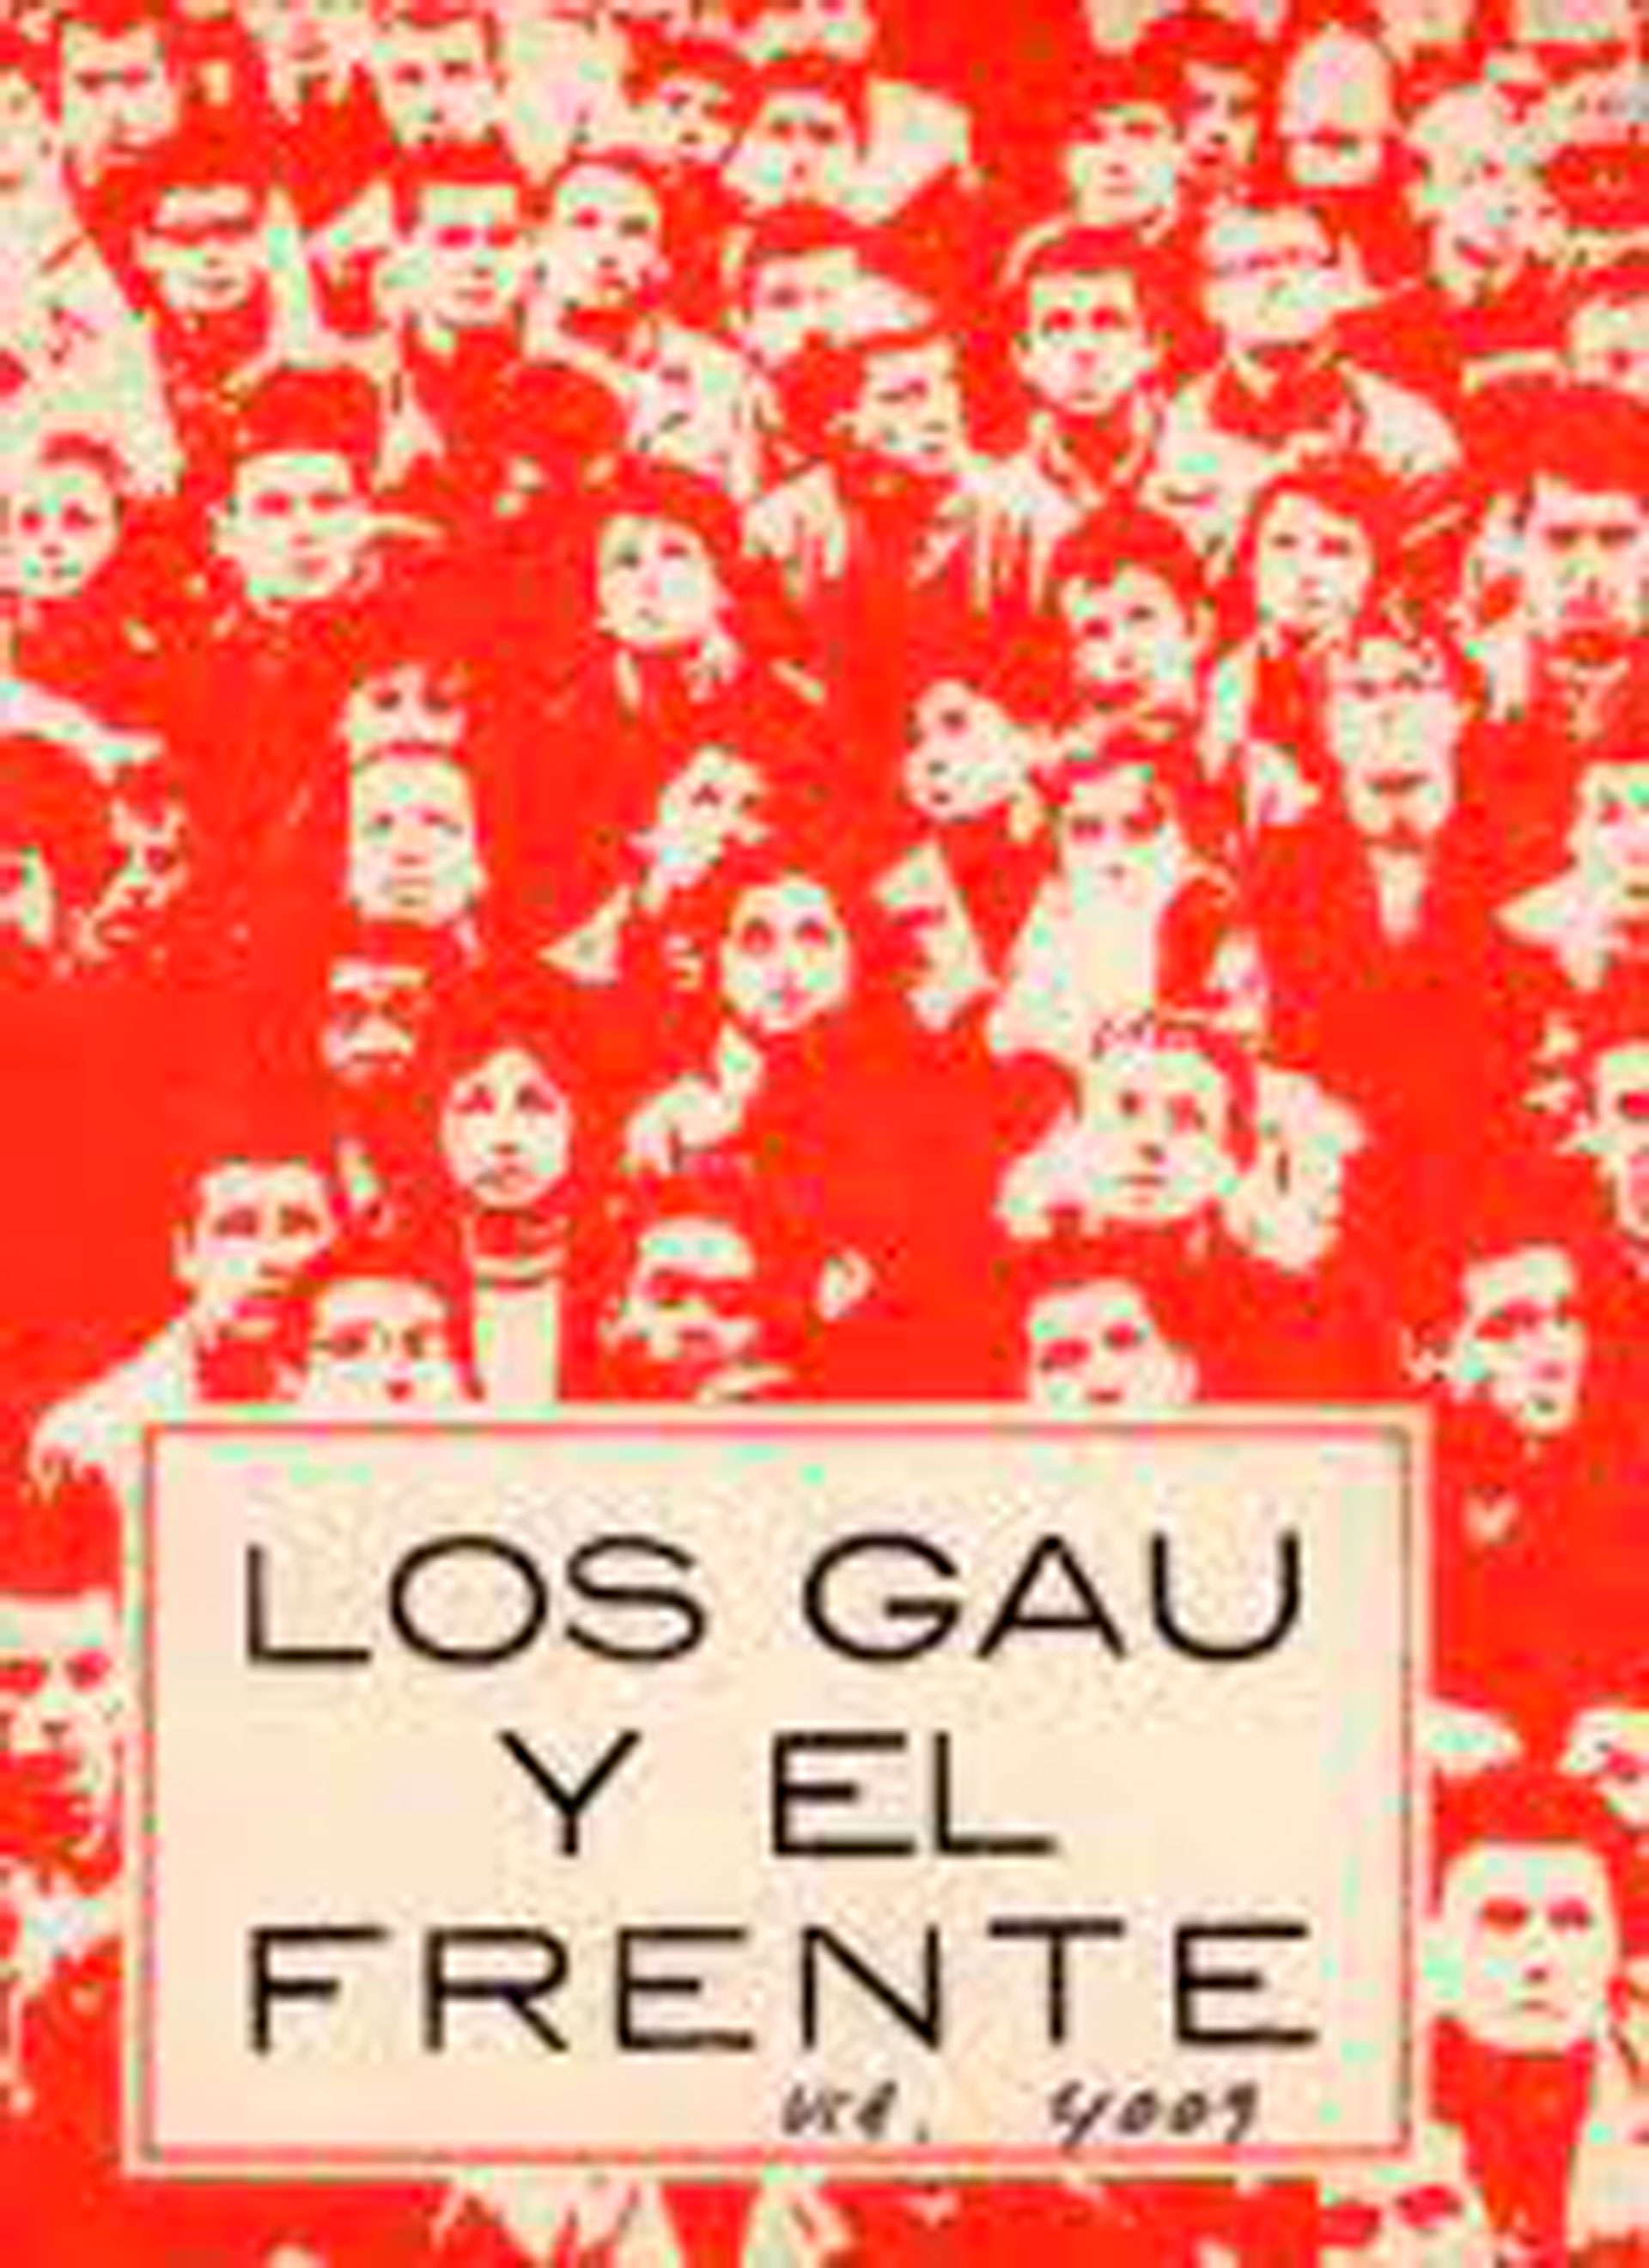 Gonzalo Mosca formaba parte del Grupo de Acción Unificadora (GAU) y había huido a Buenos Aires huyendo de la represión pero ya eran objetivo de la represión también en la Argentina